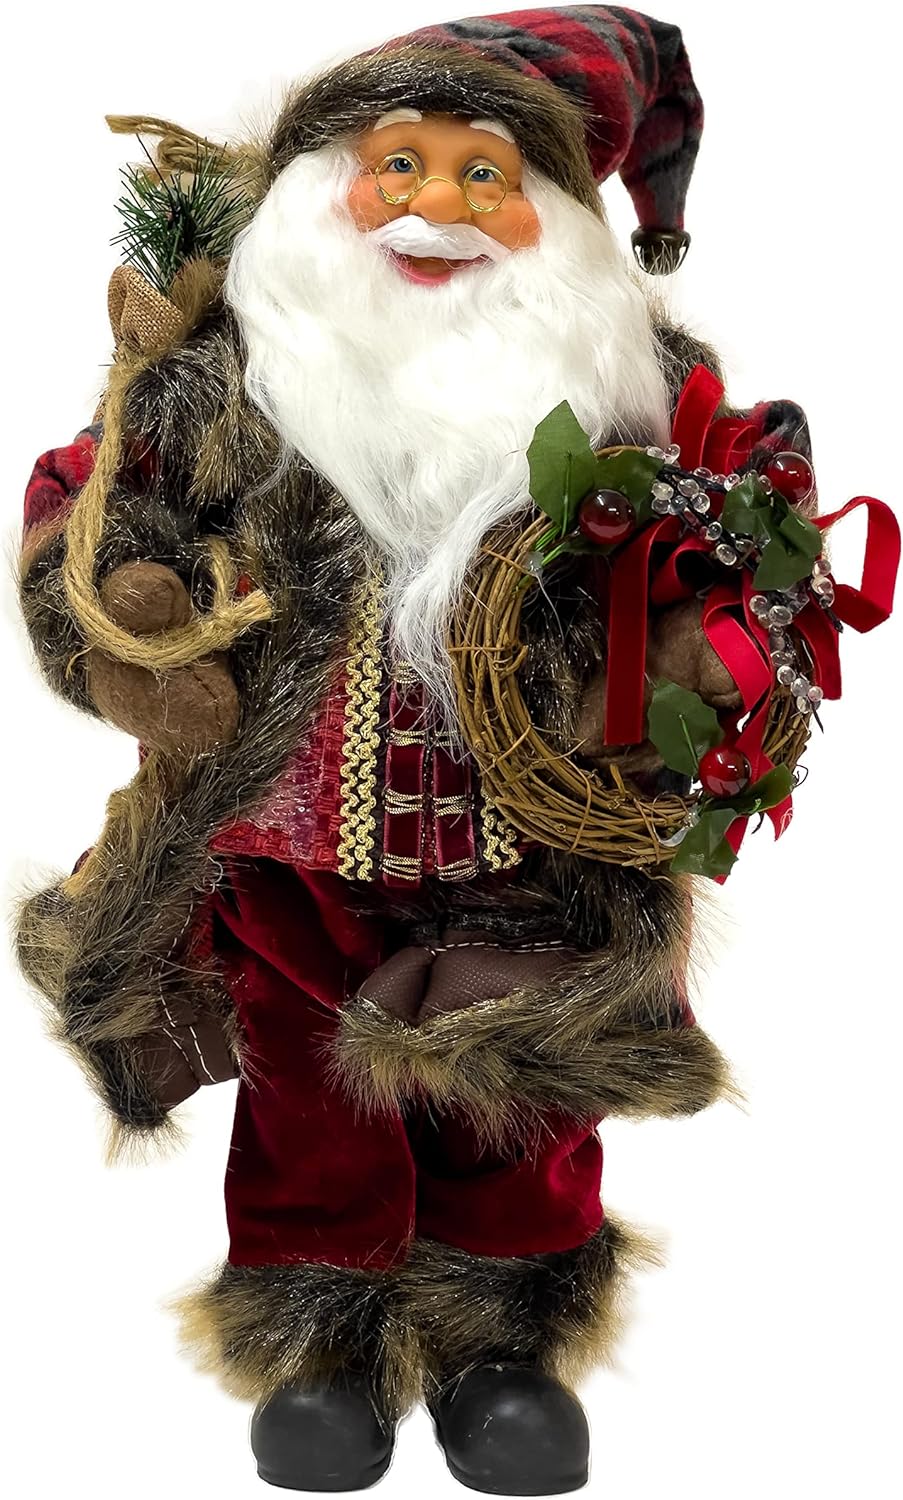 Weihnachtsmann mit Jutesack, 45 cm hoch, Sehr Detailliert - Perfekte Dekoration